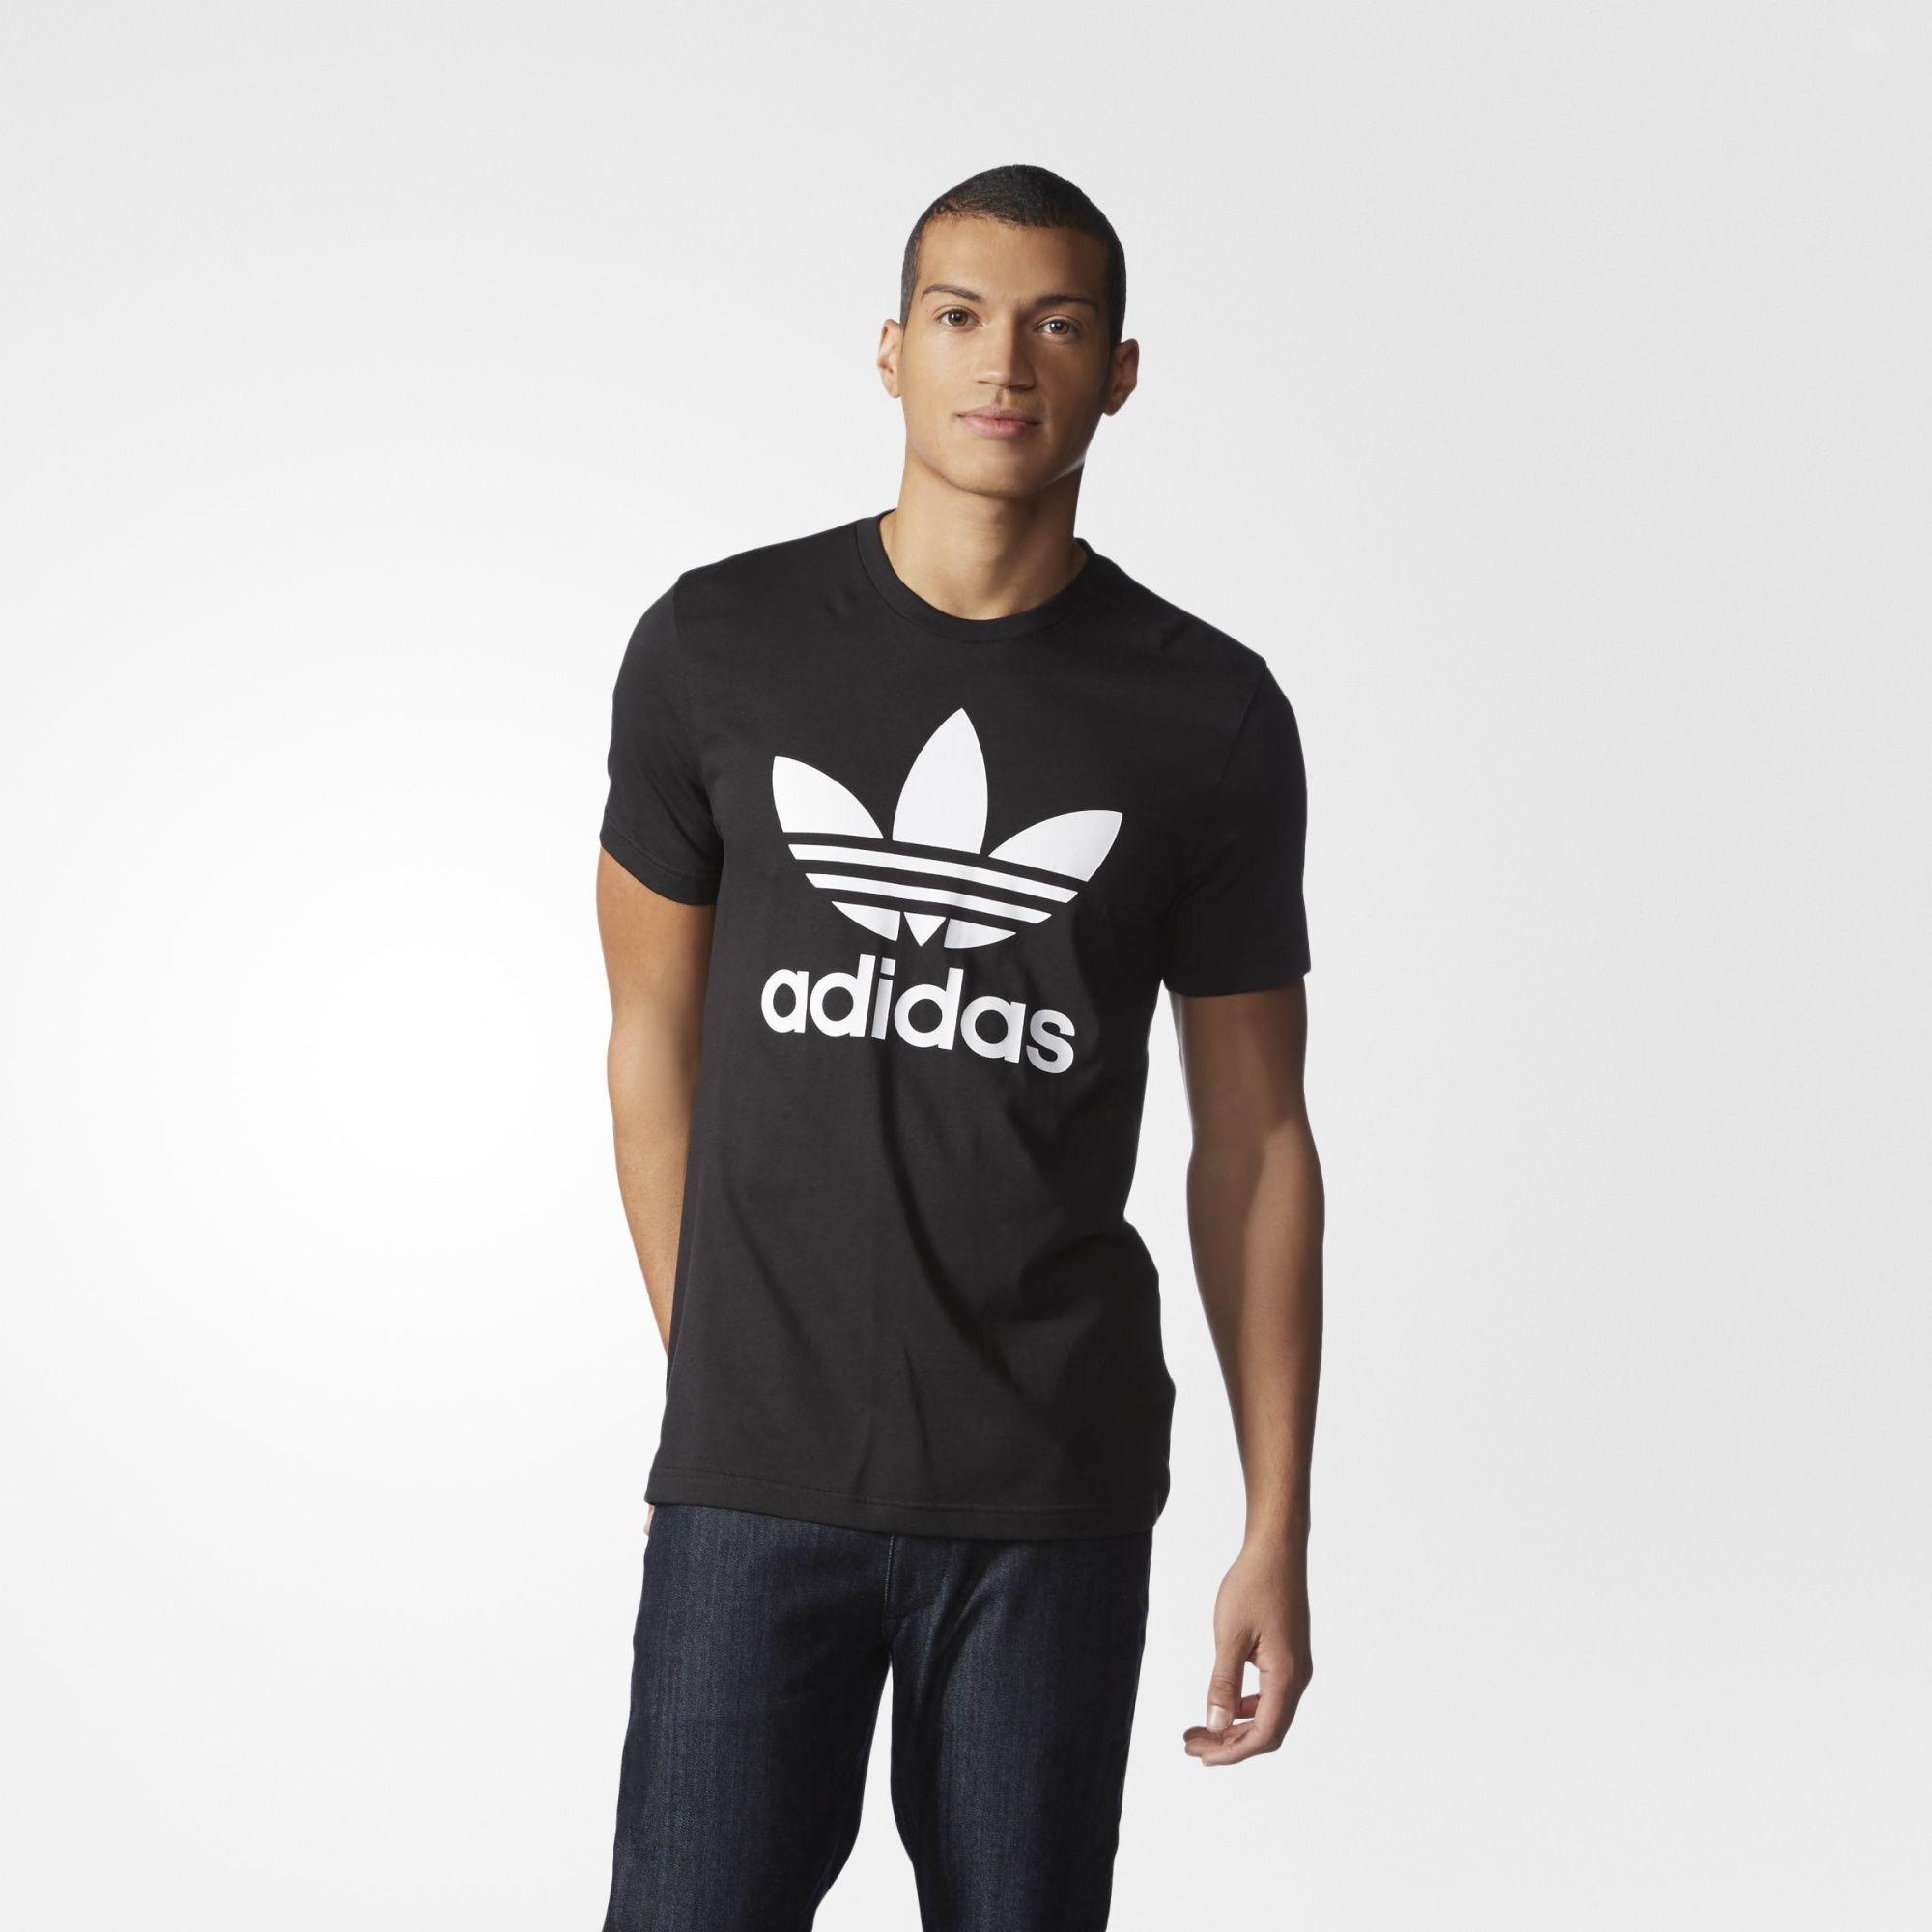 Adidas Originals Trefoil Logo - SIZE: Medium This adidas Originals Trefoil Tee puts the Trefoil logo